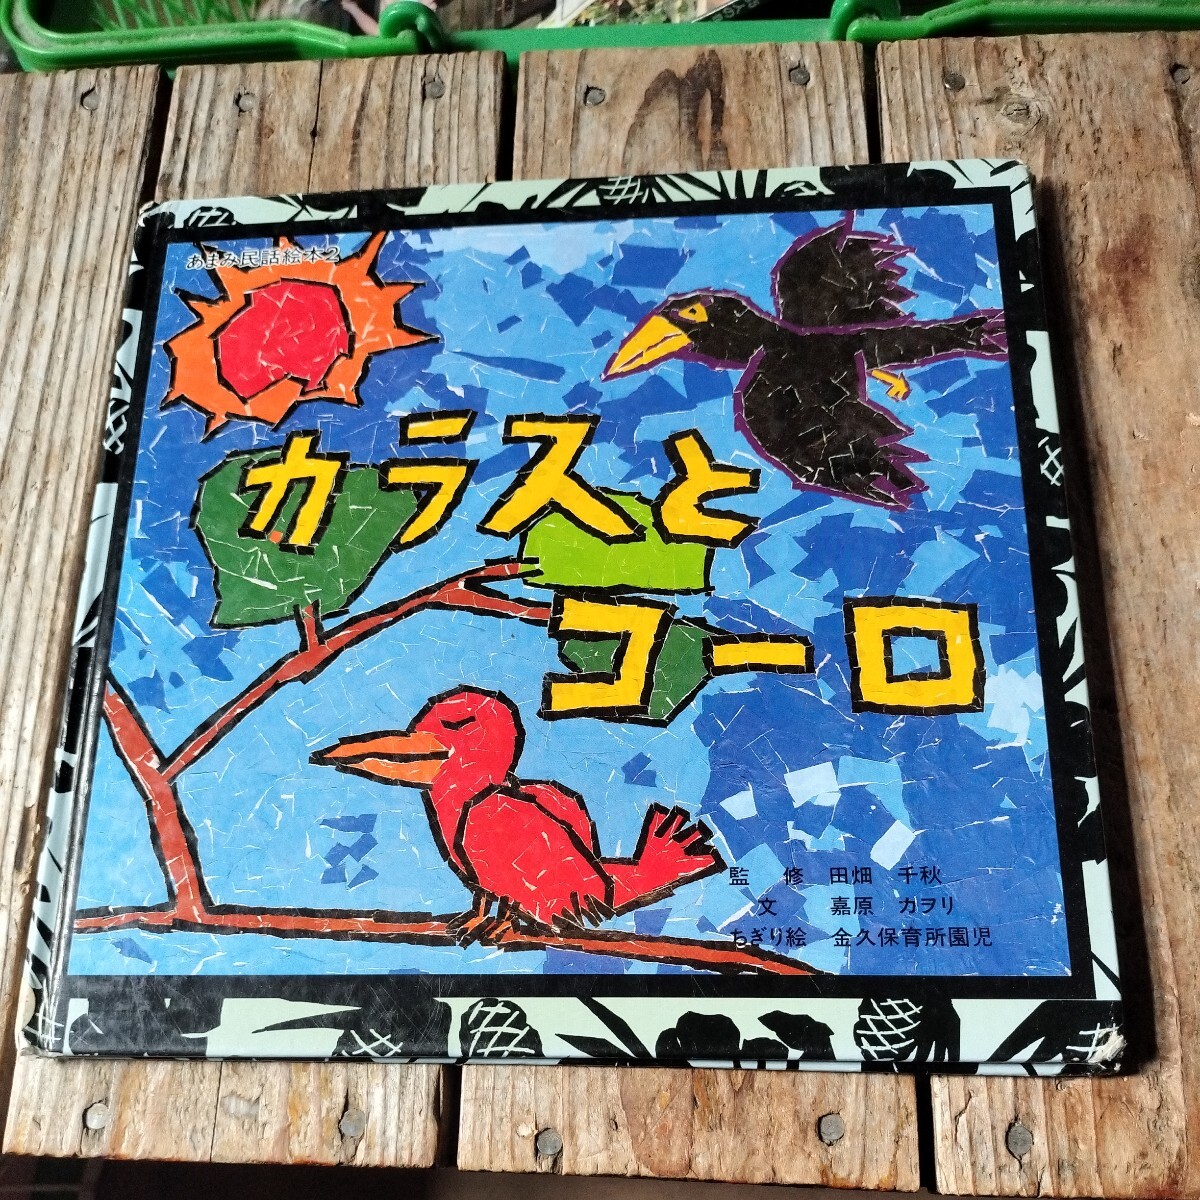 *... народные сказки книга с картинками kalas.ko-ro рисовое поле поле Chiaki Amami народные сказки. .*